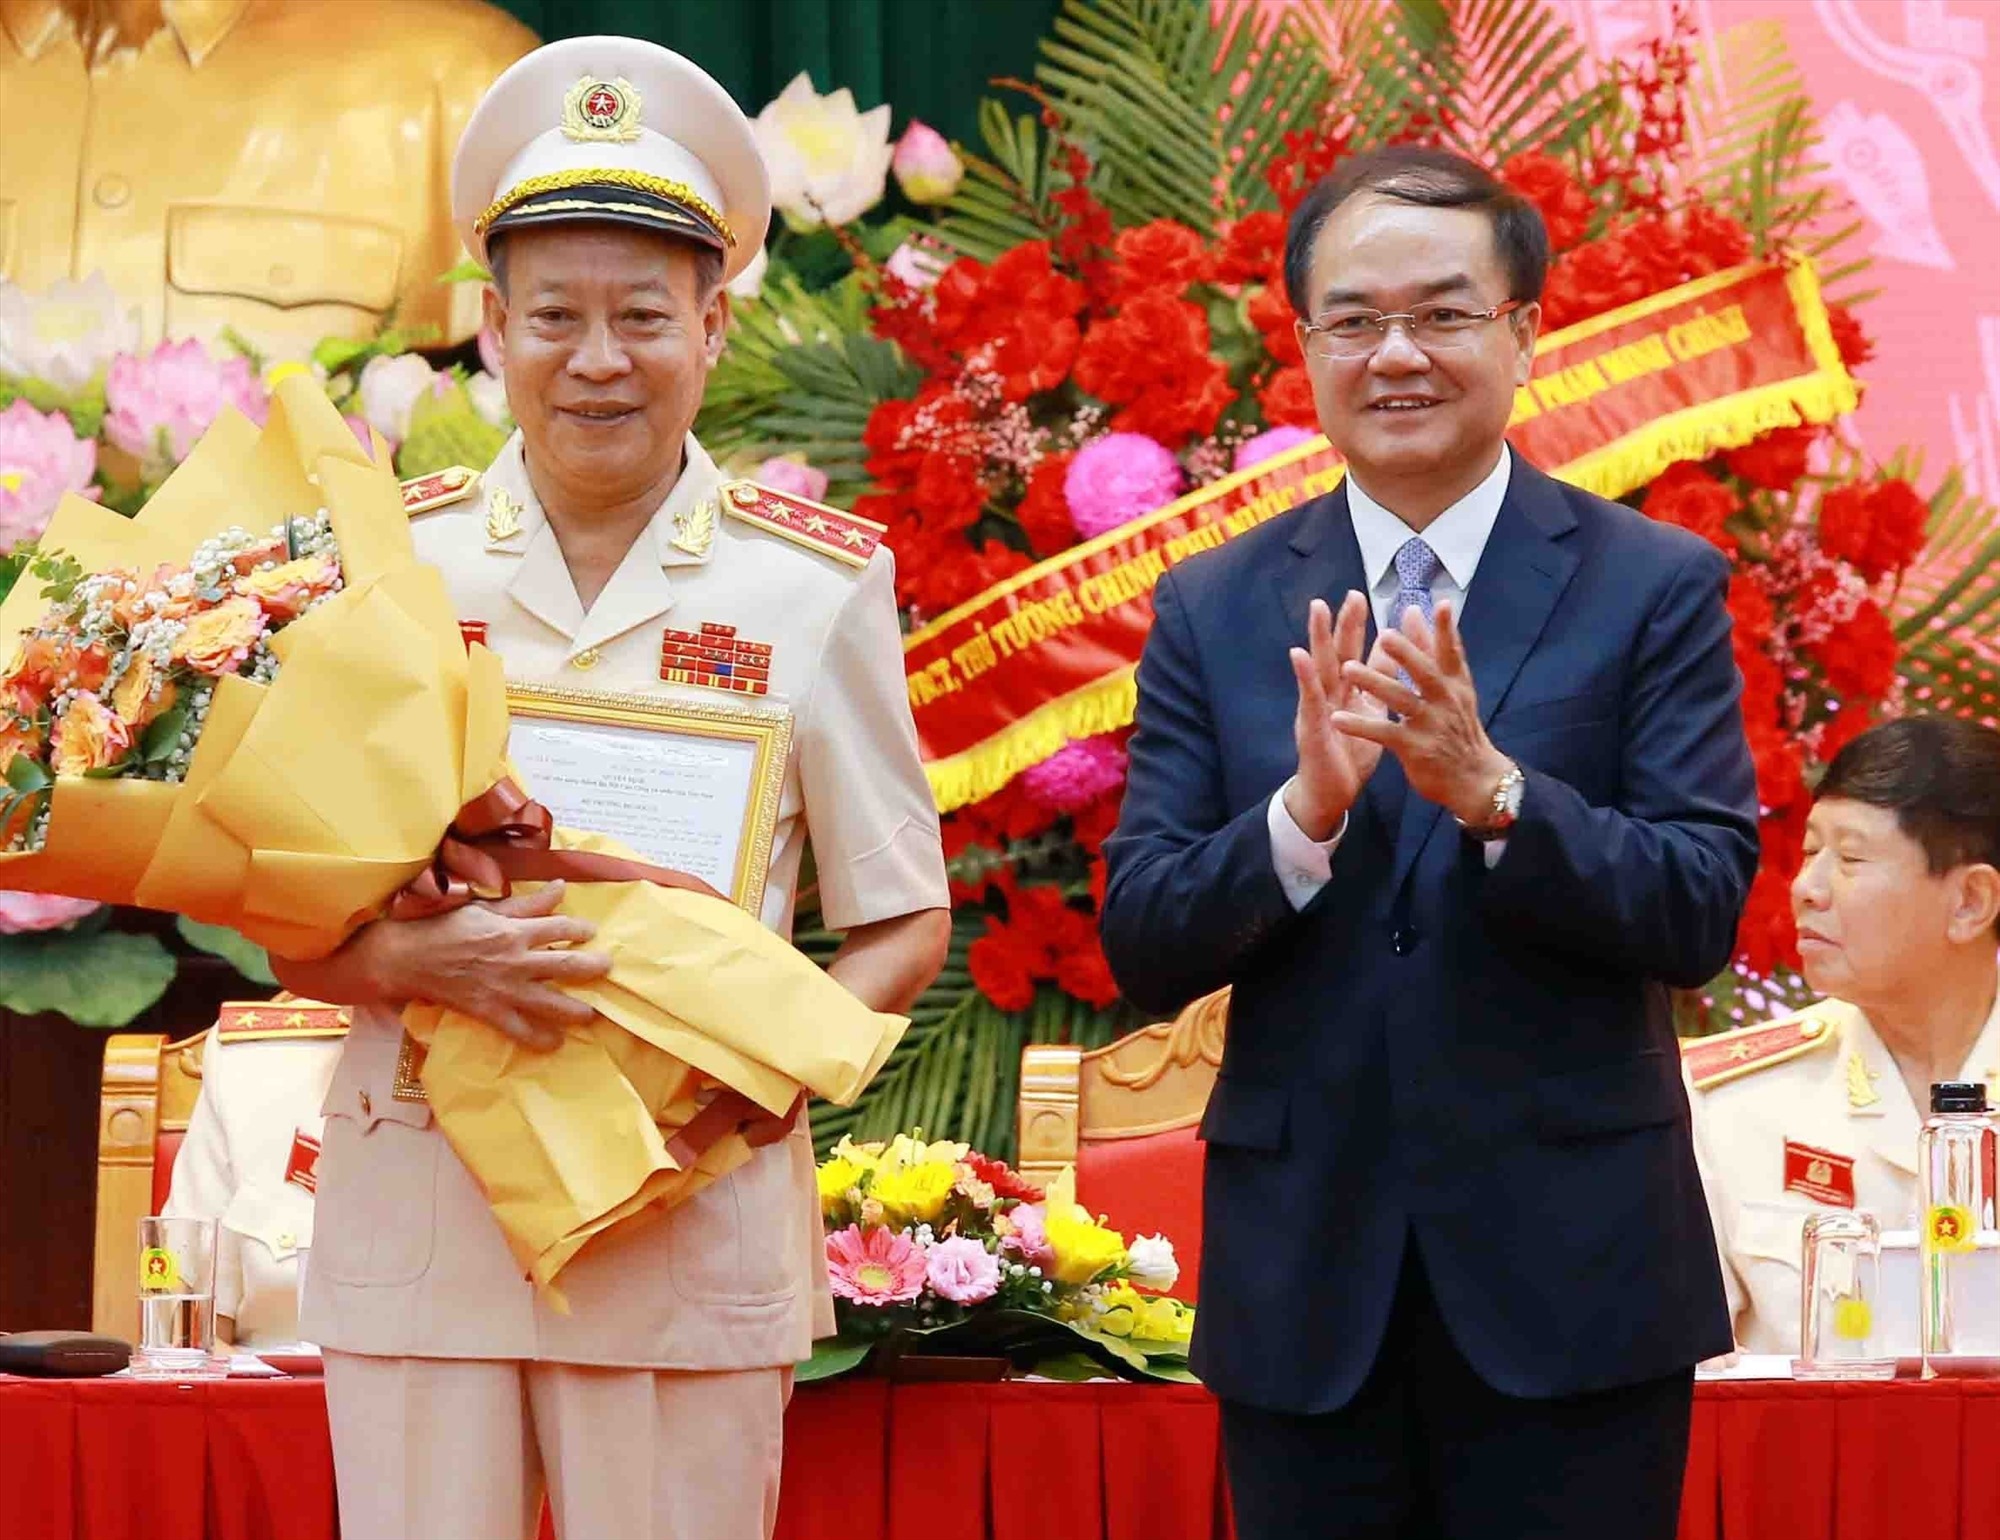 Thượng tướng Lê Quý Vương - nguyên Thứ trưởng Bộ Công an - được bầu làm Chủ tịch Hội cựu Công an nhân dân Việt Nam. Ảnh: H.Phong